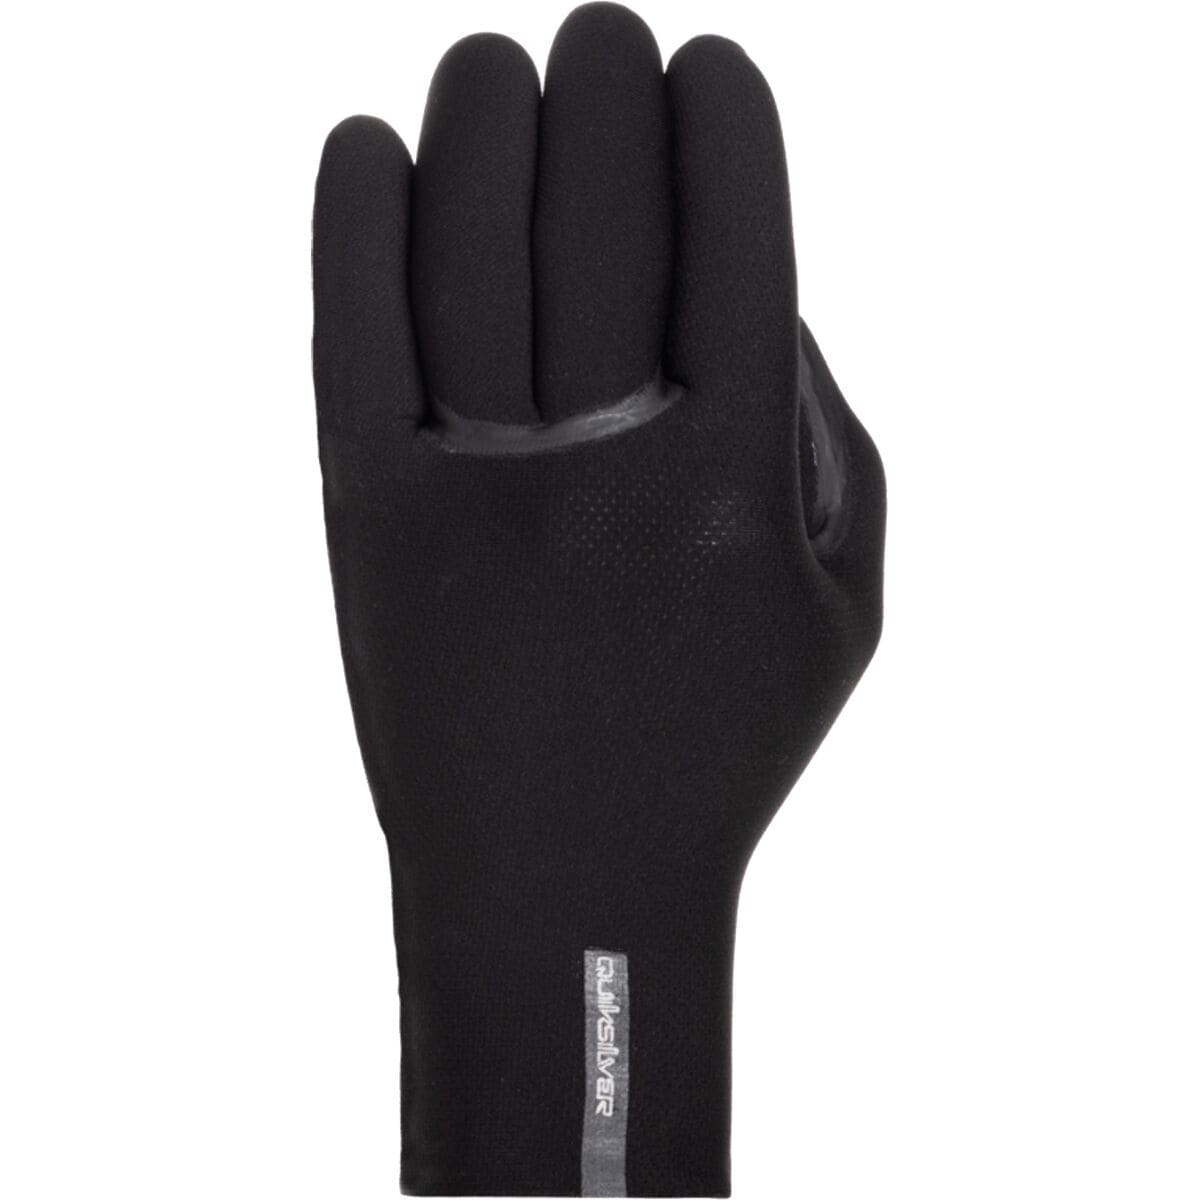 Quiksilver 3mm M-Sessions 5FG Gloves - Men's